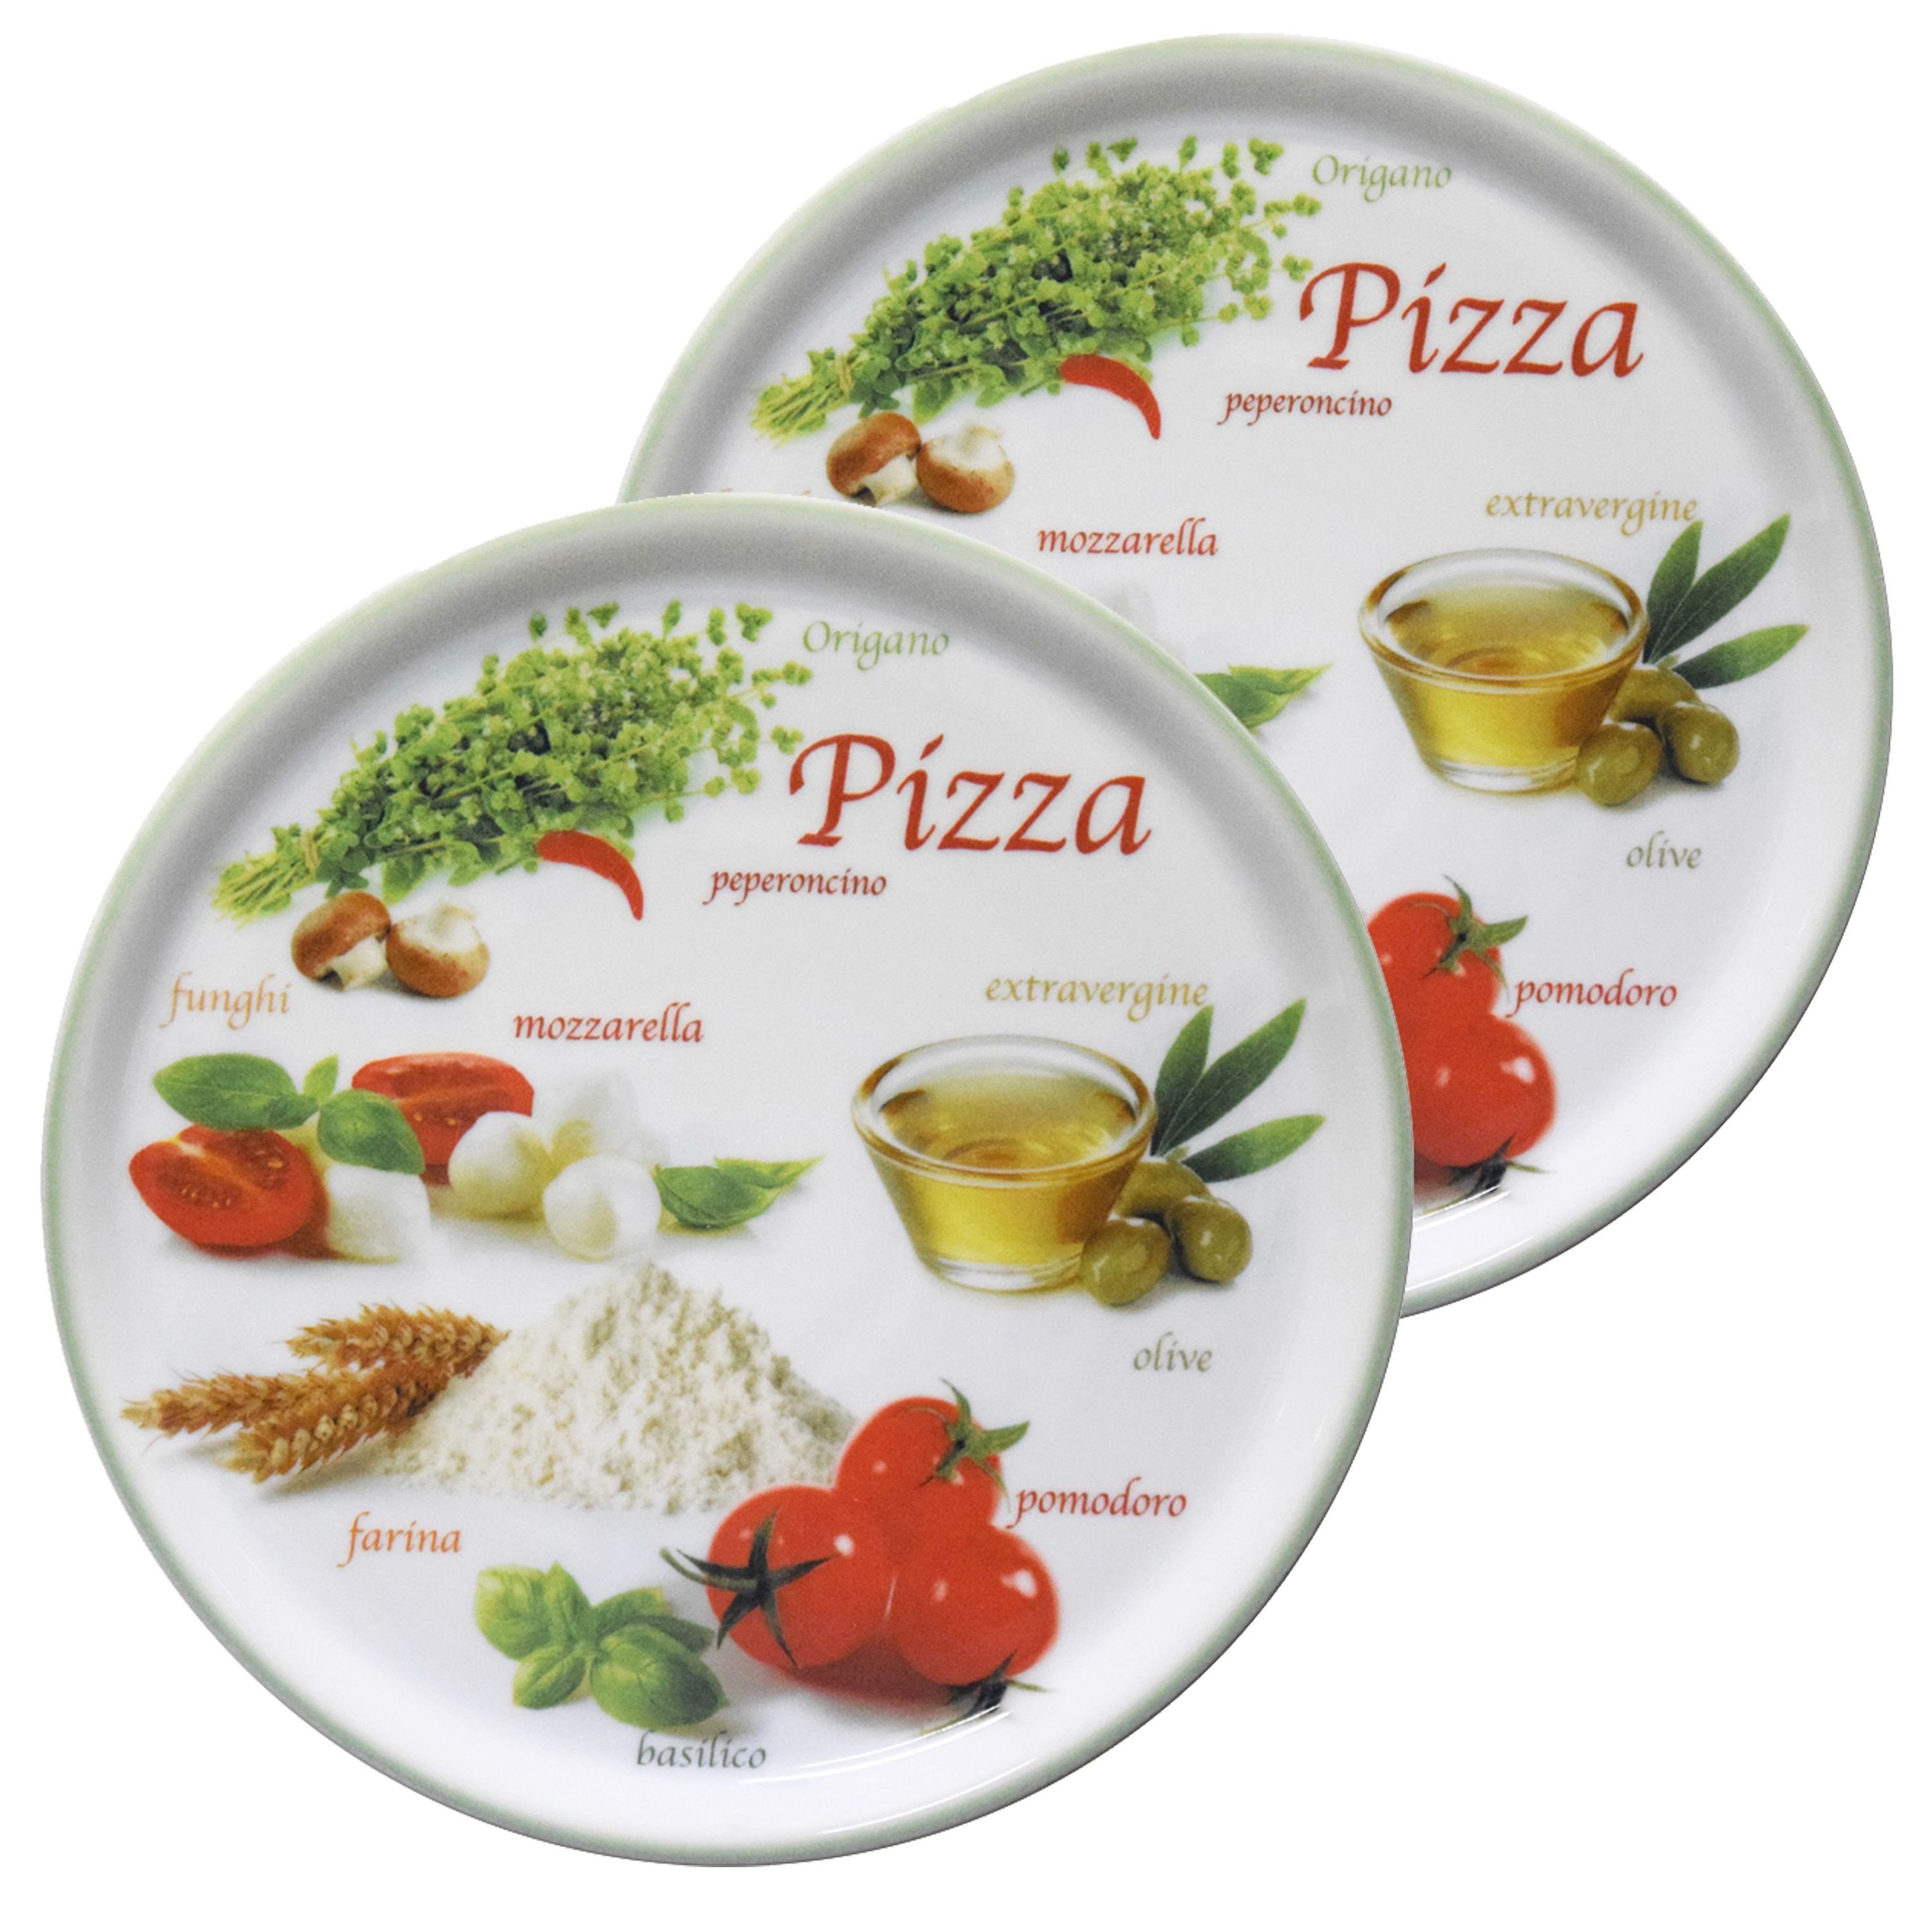 Pizzateller Pizzateller Pizzafoods Set grün 2er 04018#ZP1 Napoli 33cm - MamboCat